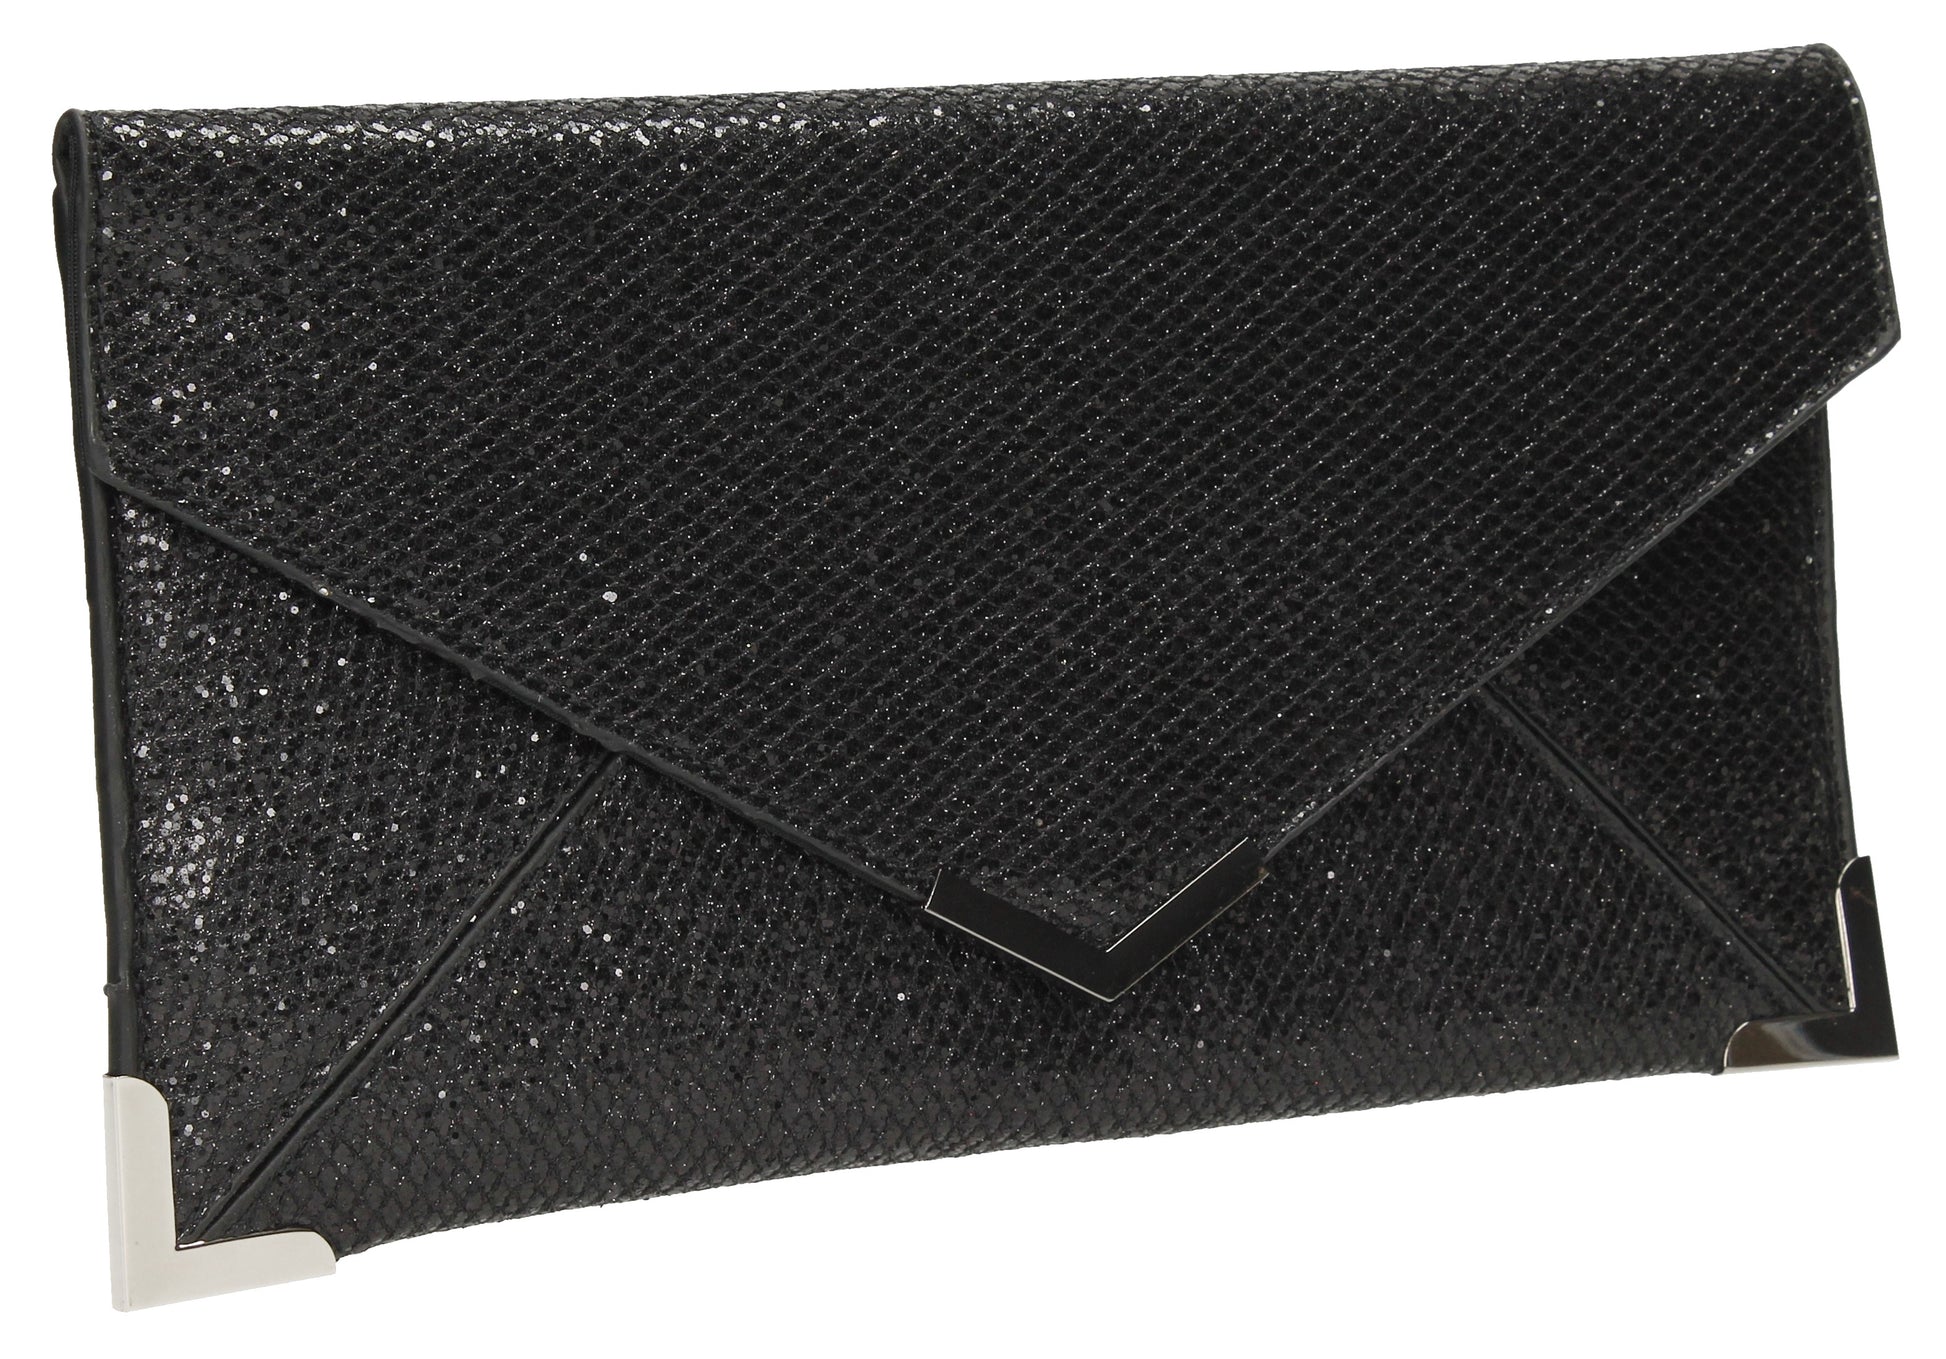 SWANKYSWANS Fallabella Glitter Clutch Bag Black Cute Cheap Clutch Bag For Weddings School and Work